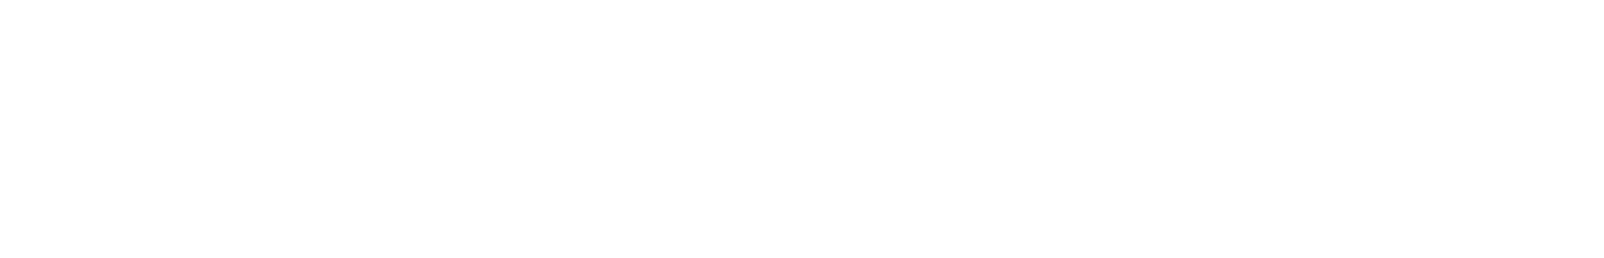 Knorr-Bremse logo large for dark backgrounds (transparent PNG)